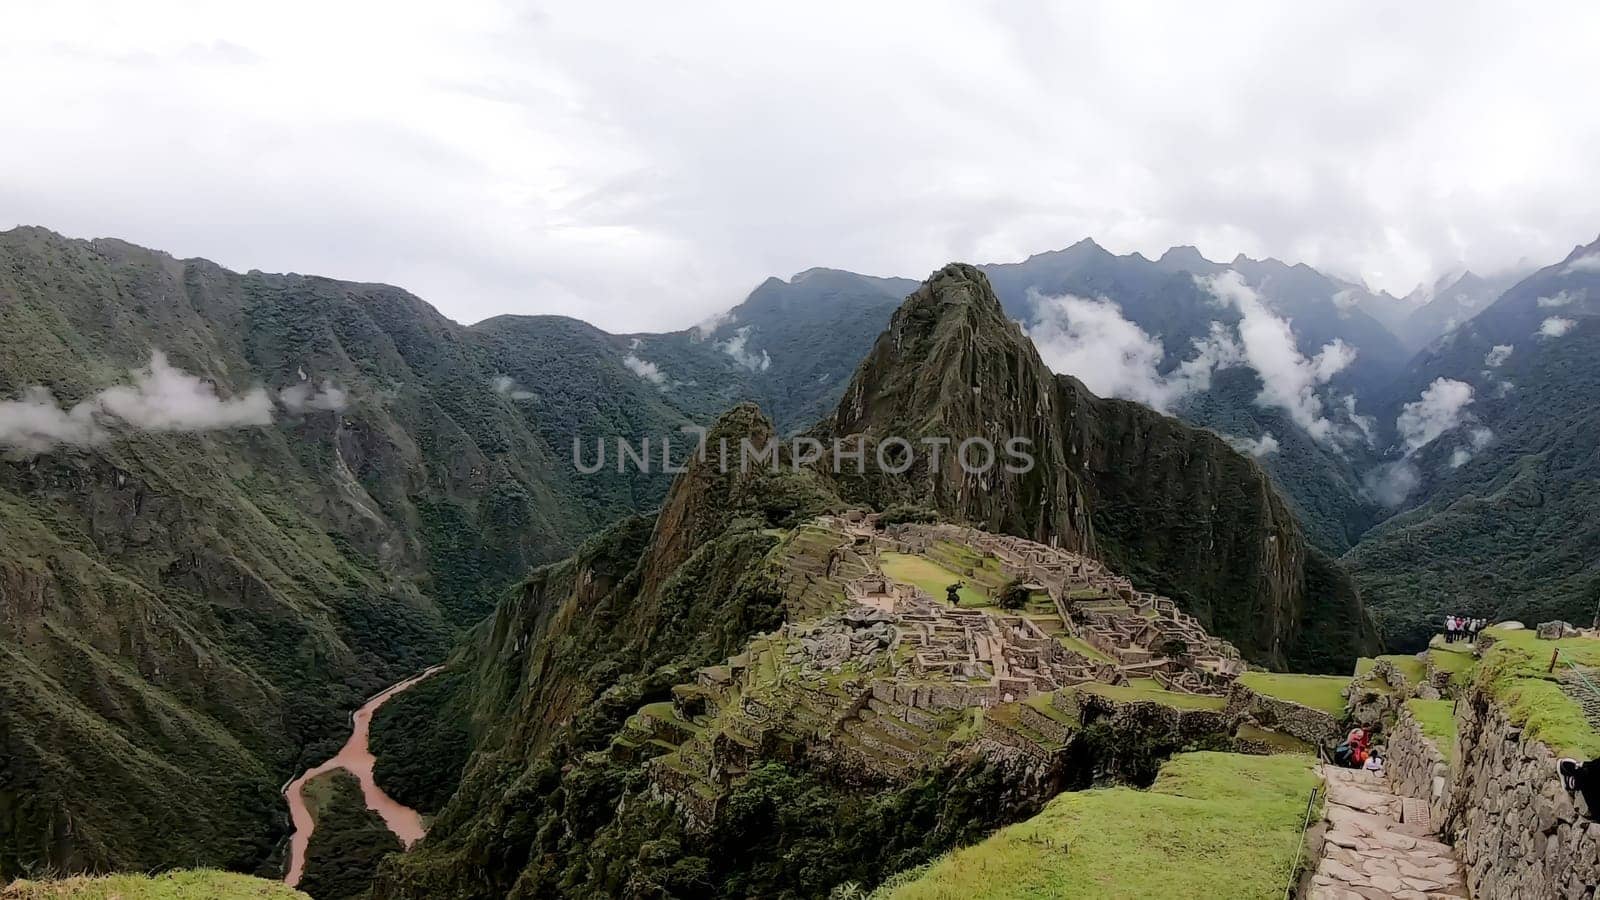 Majestic machu picchu overlooking mountain valley by Peruphotoart